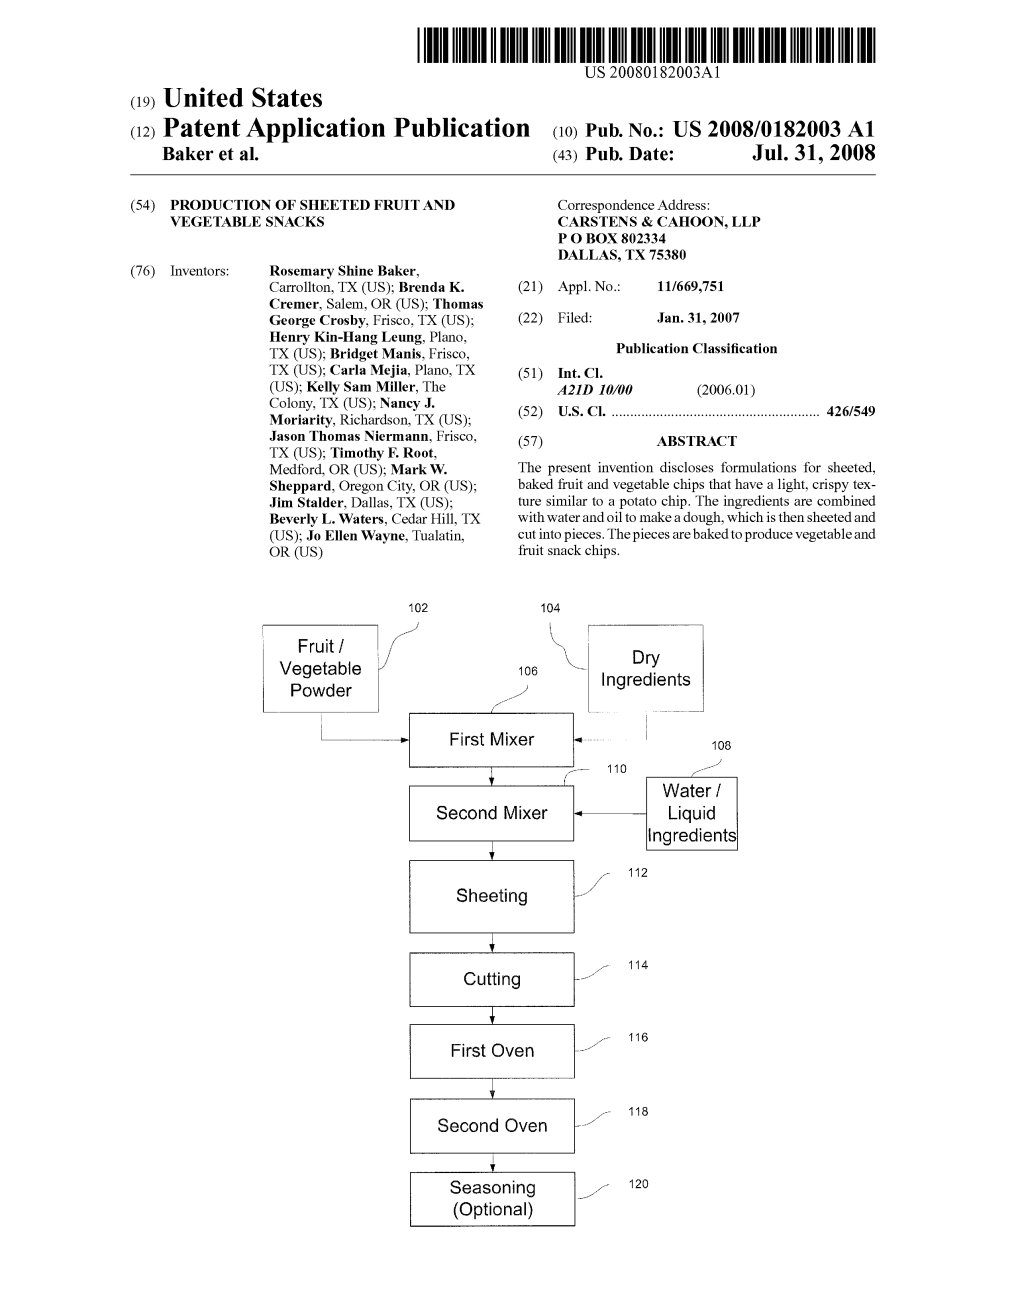 (12) Patent Application Publication (10) Pub. No.: US 2008/0182003 A1 Baker Et Al